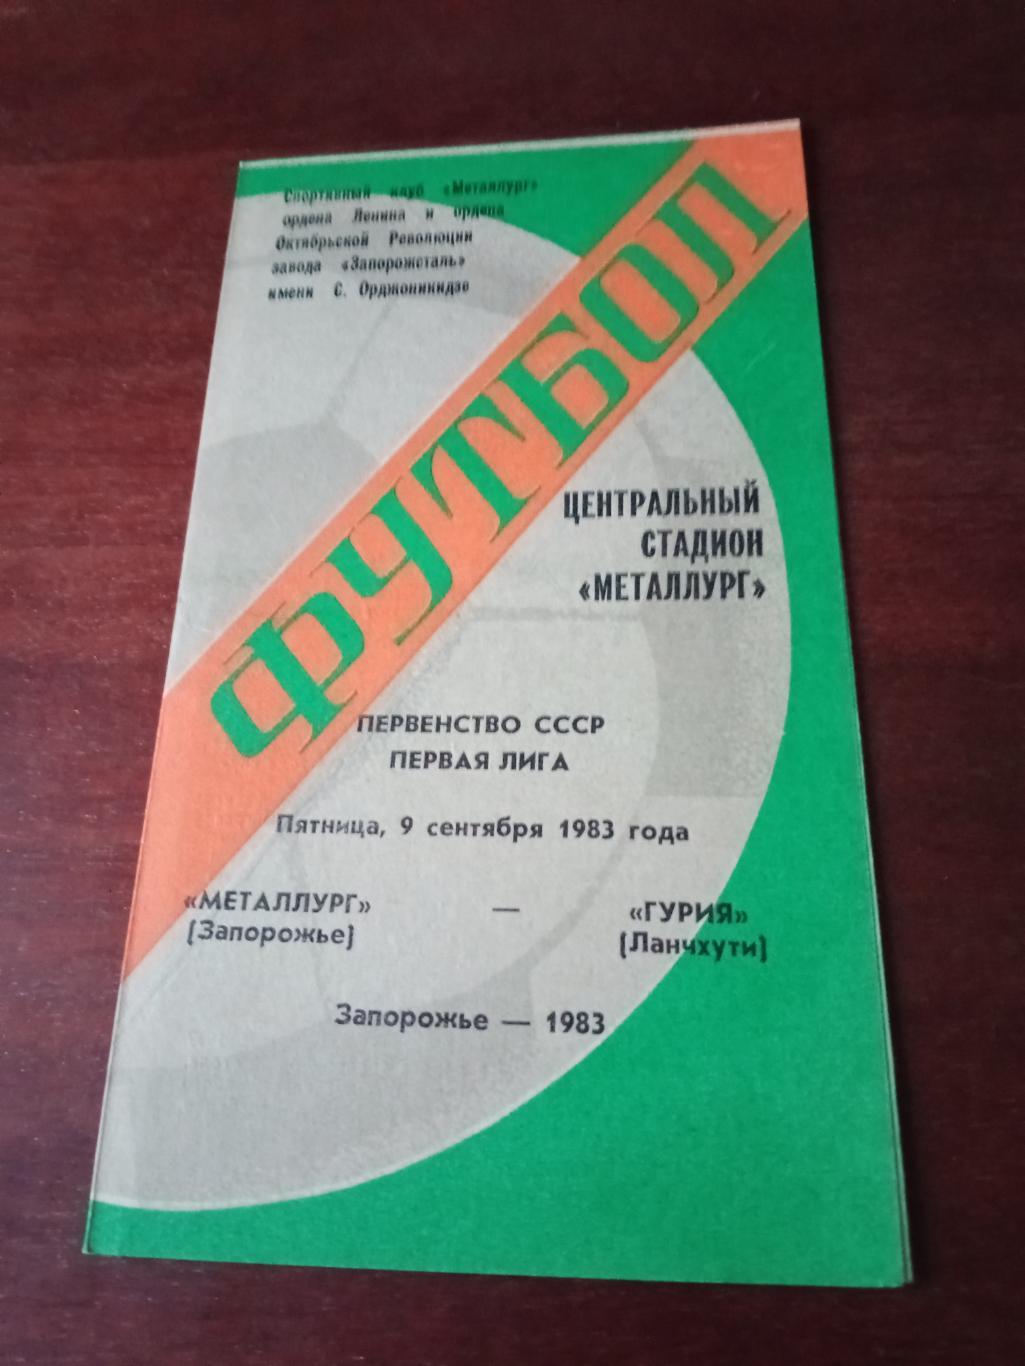 Металлург Запорожье - Гурия Ланчхути. 9 сентября 1983 год